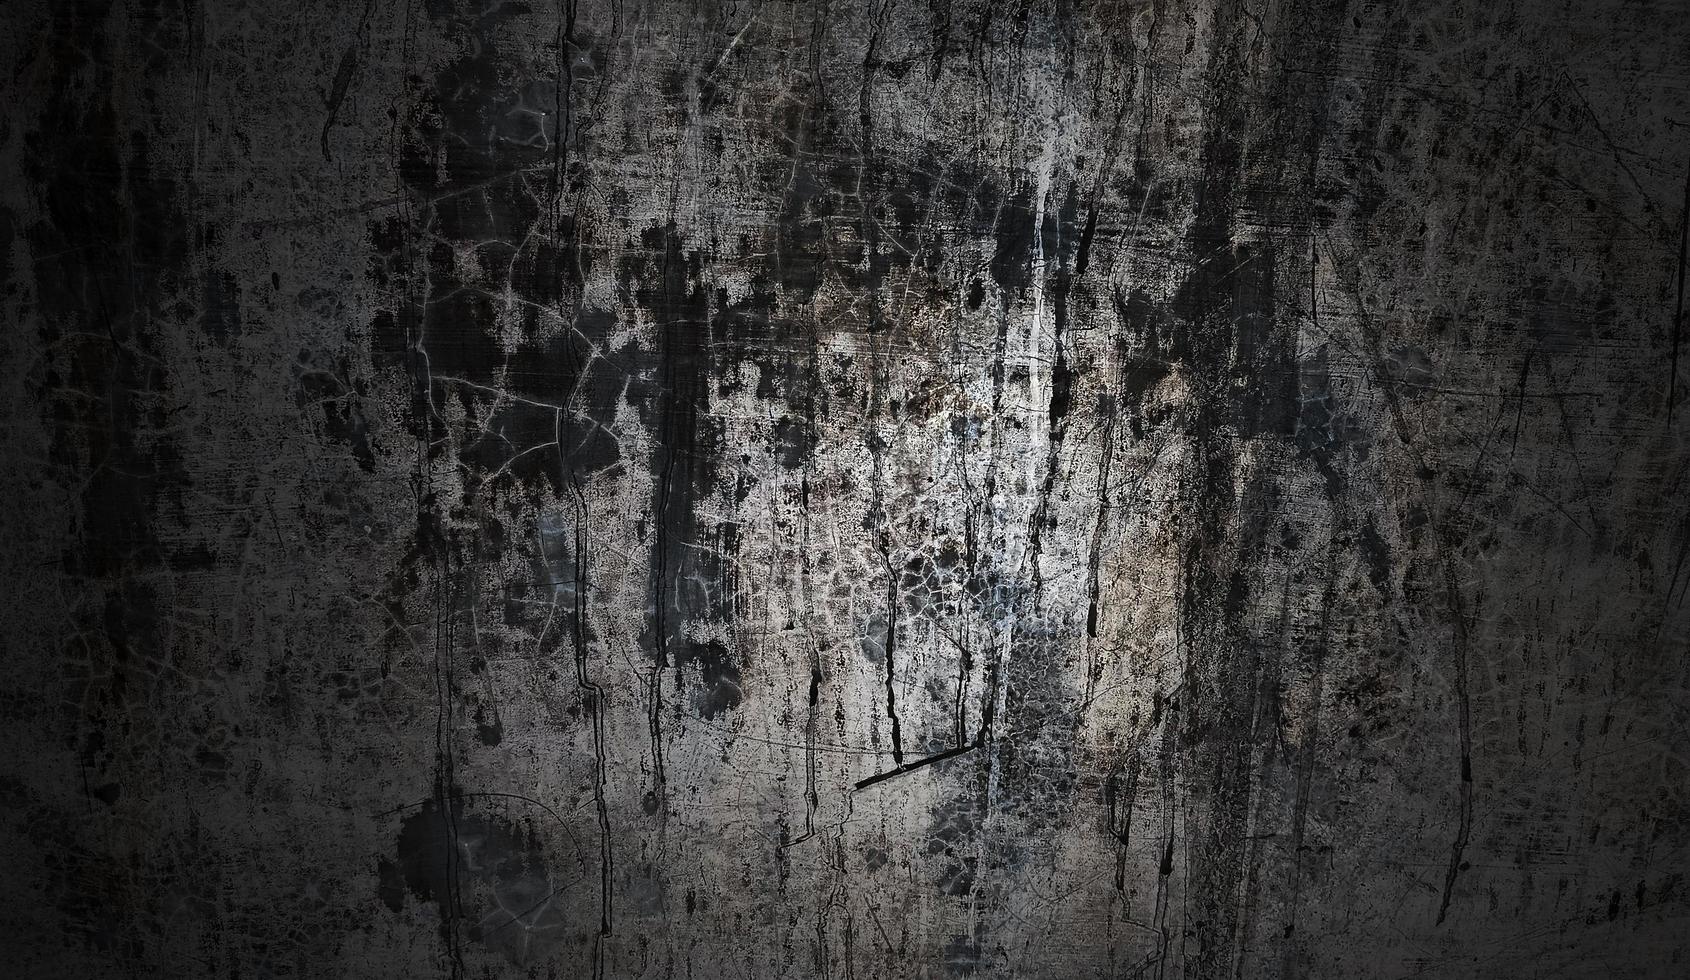 concepto de fondo de halloween de pared oscura y negra. hormigón negro polvoriento para el fondo. textura de cemento de terror foto